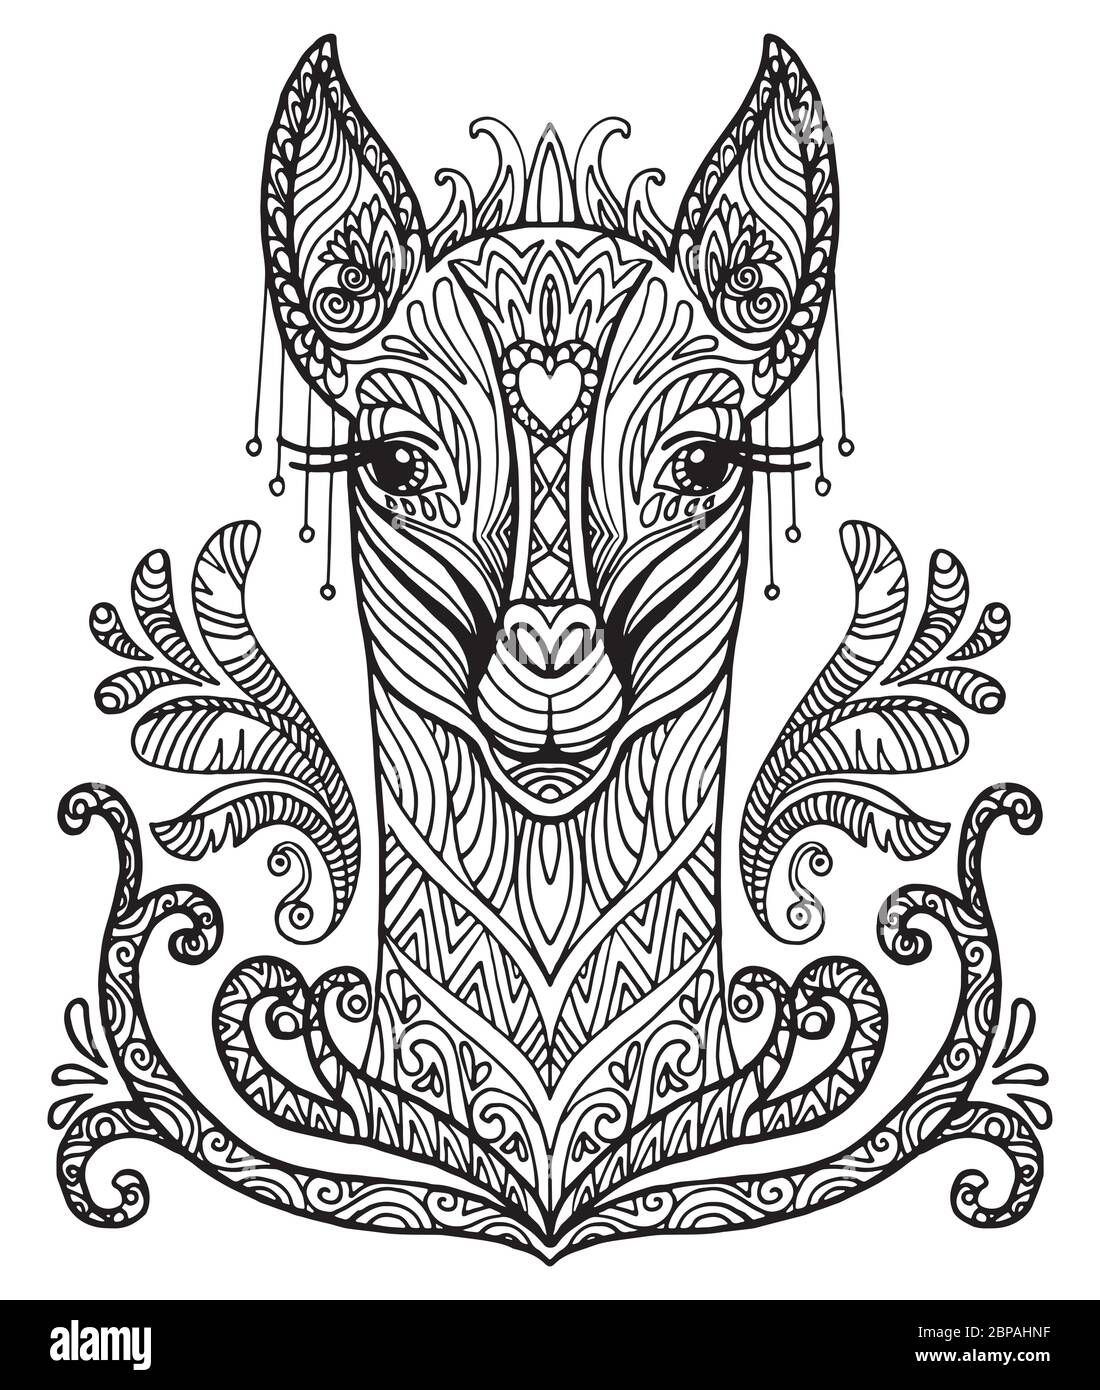 Vettore decorativo doodle testa ornamentale di lama. Illustrazione vettoriale astratta del contorno nero lama isolato su sfondo bianco. Illustrazione del magazzino Illustrazione Vettoriale